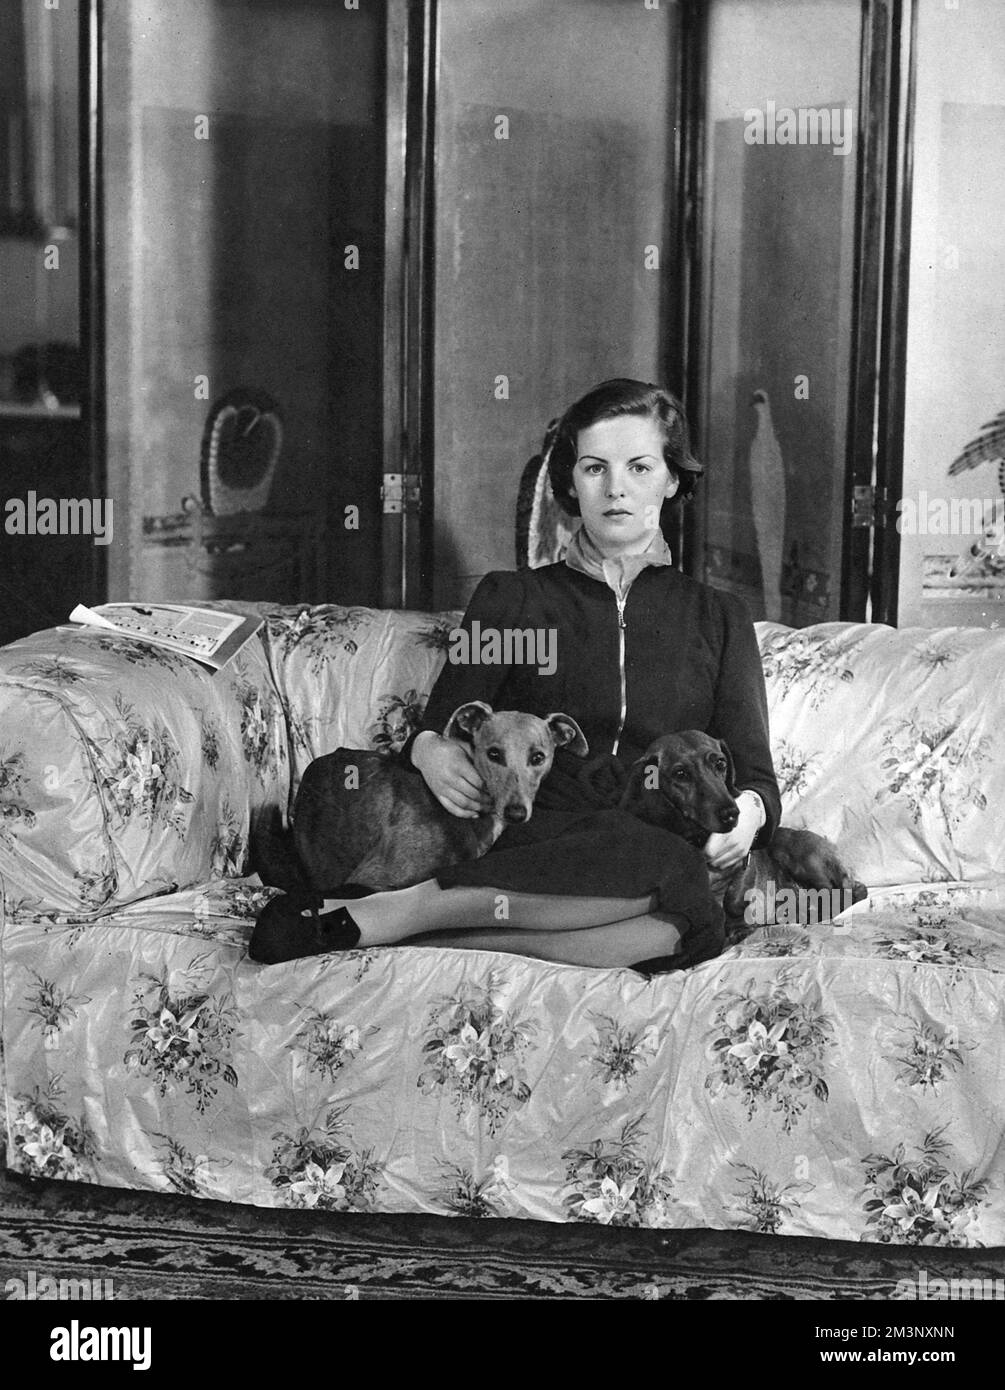 Deborah Mitford (geboren 1920), später Herzogin von Devonshire, jetzt Herzogin von Devonshire. Im Jahr ihrer Debütantin - 1938 Jahre - auf einem Blumensofa mit zwei ihrer Hunde, einem Windhund und einem Dackel. Datum: 1938 Stockfoto